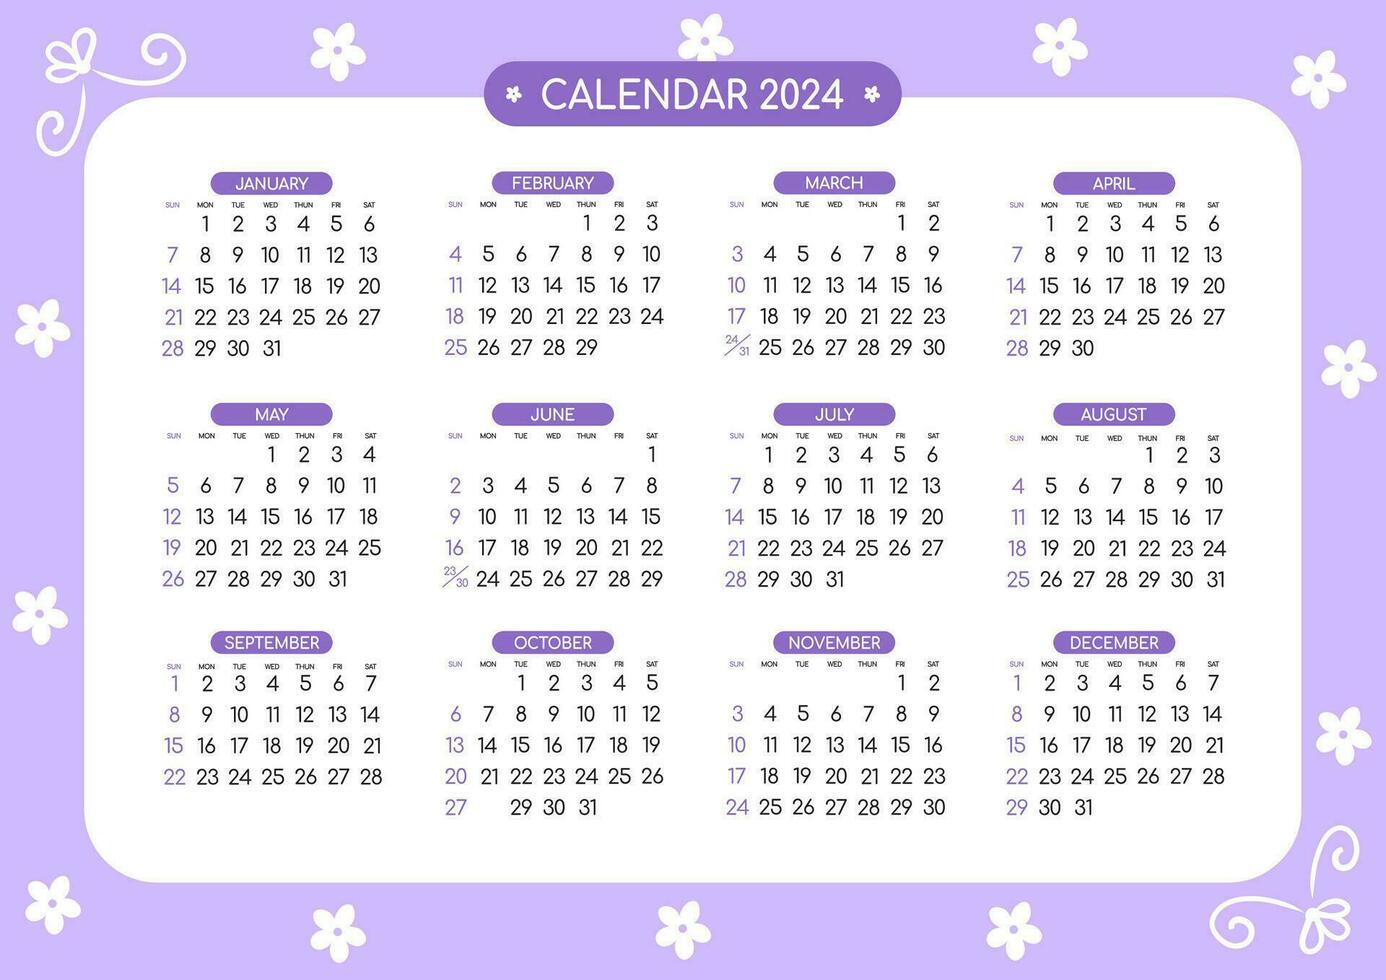 Kalender 2024 - - alle Monate vektor